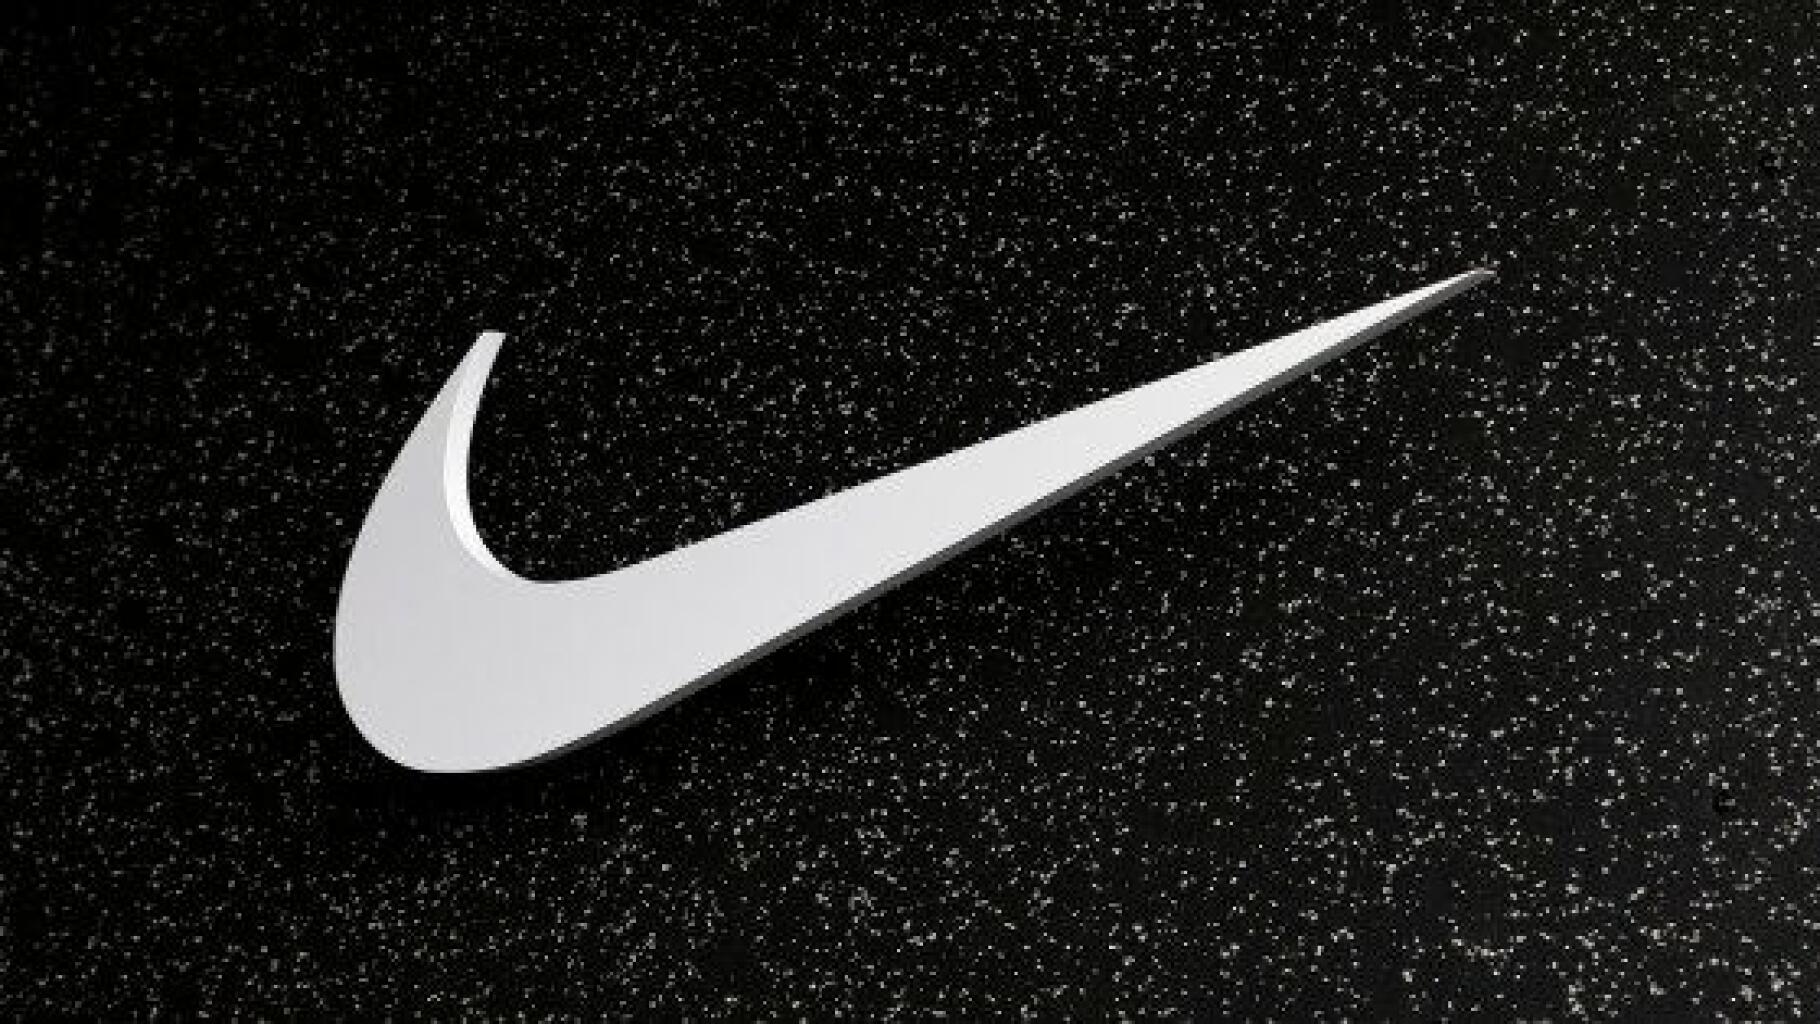 Hablar en voz alta Jirafa Precipicio Comment prononce-t-on "Nike" ? Selon le PDG, c'est "Ni-Key"